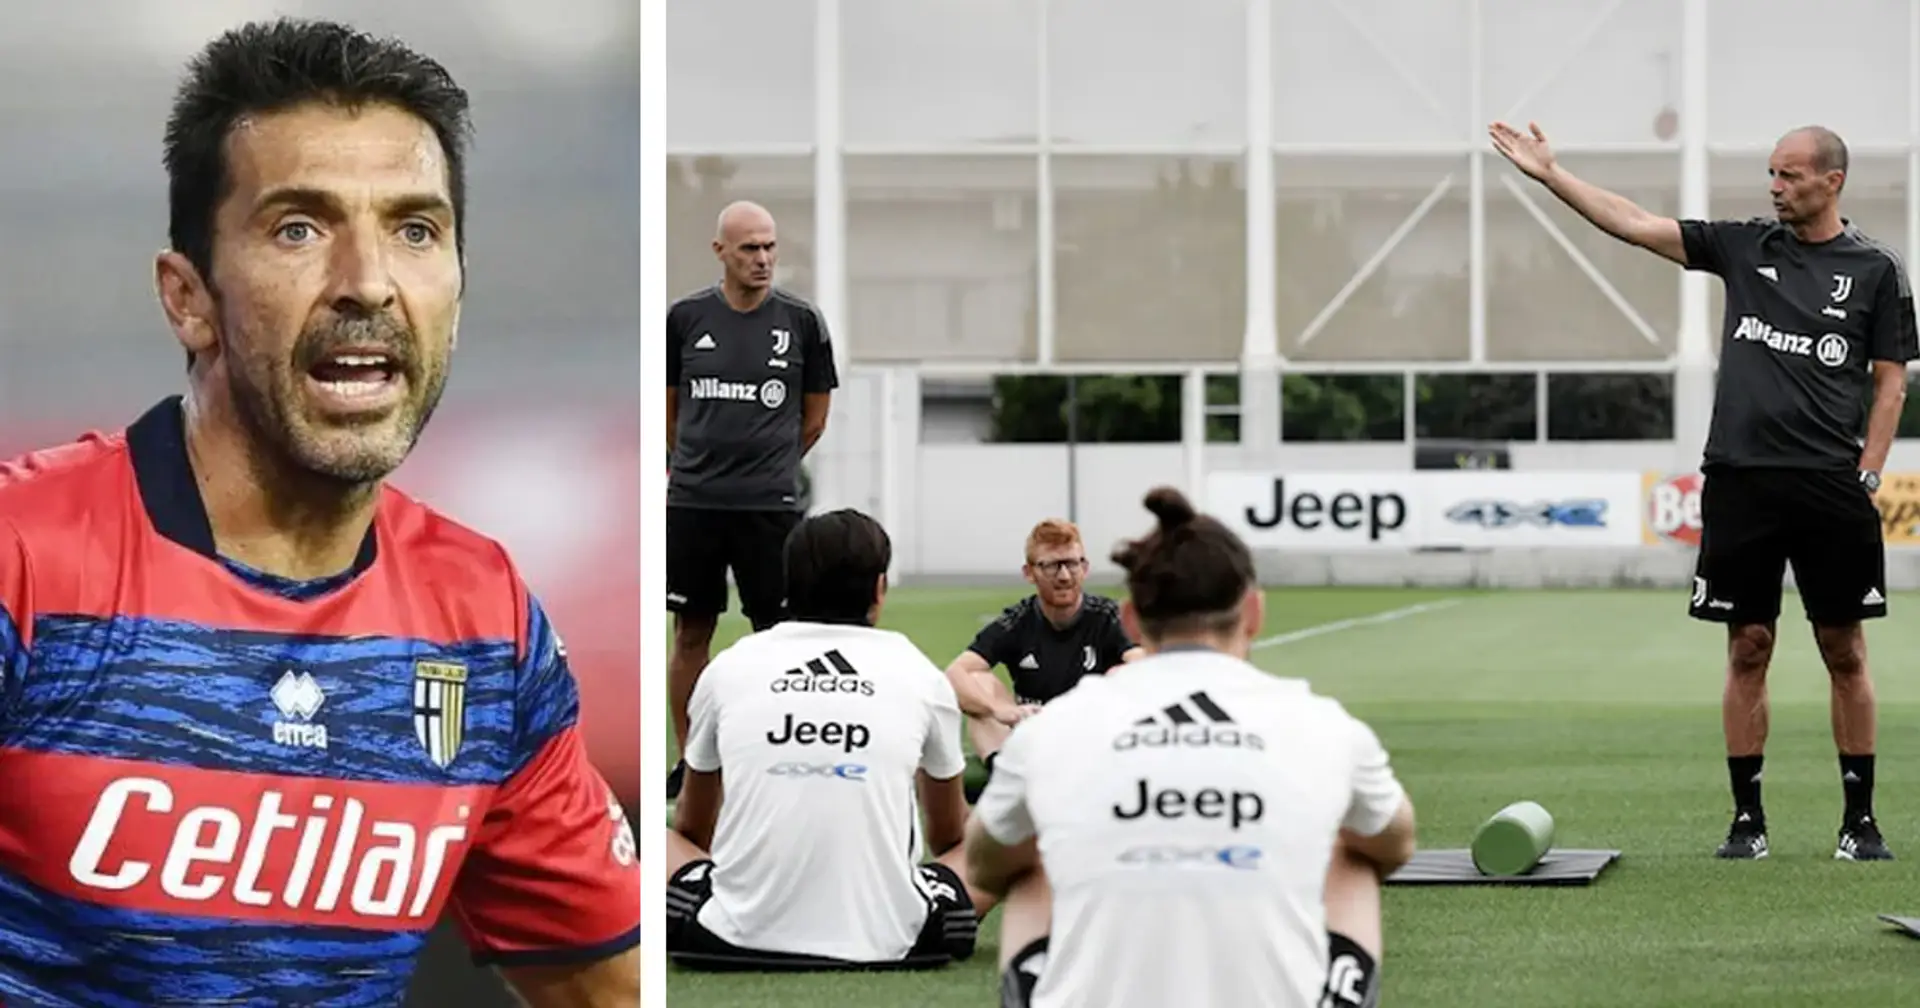 "Il calo era evidente, ora bisogna vedere se la Juve è squadra!": Buffon svela come uscire dal momento delicato